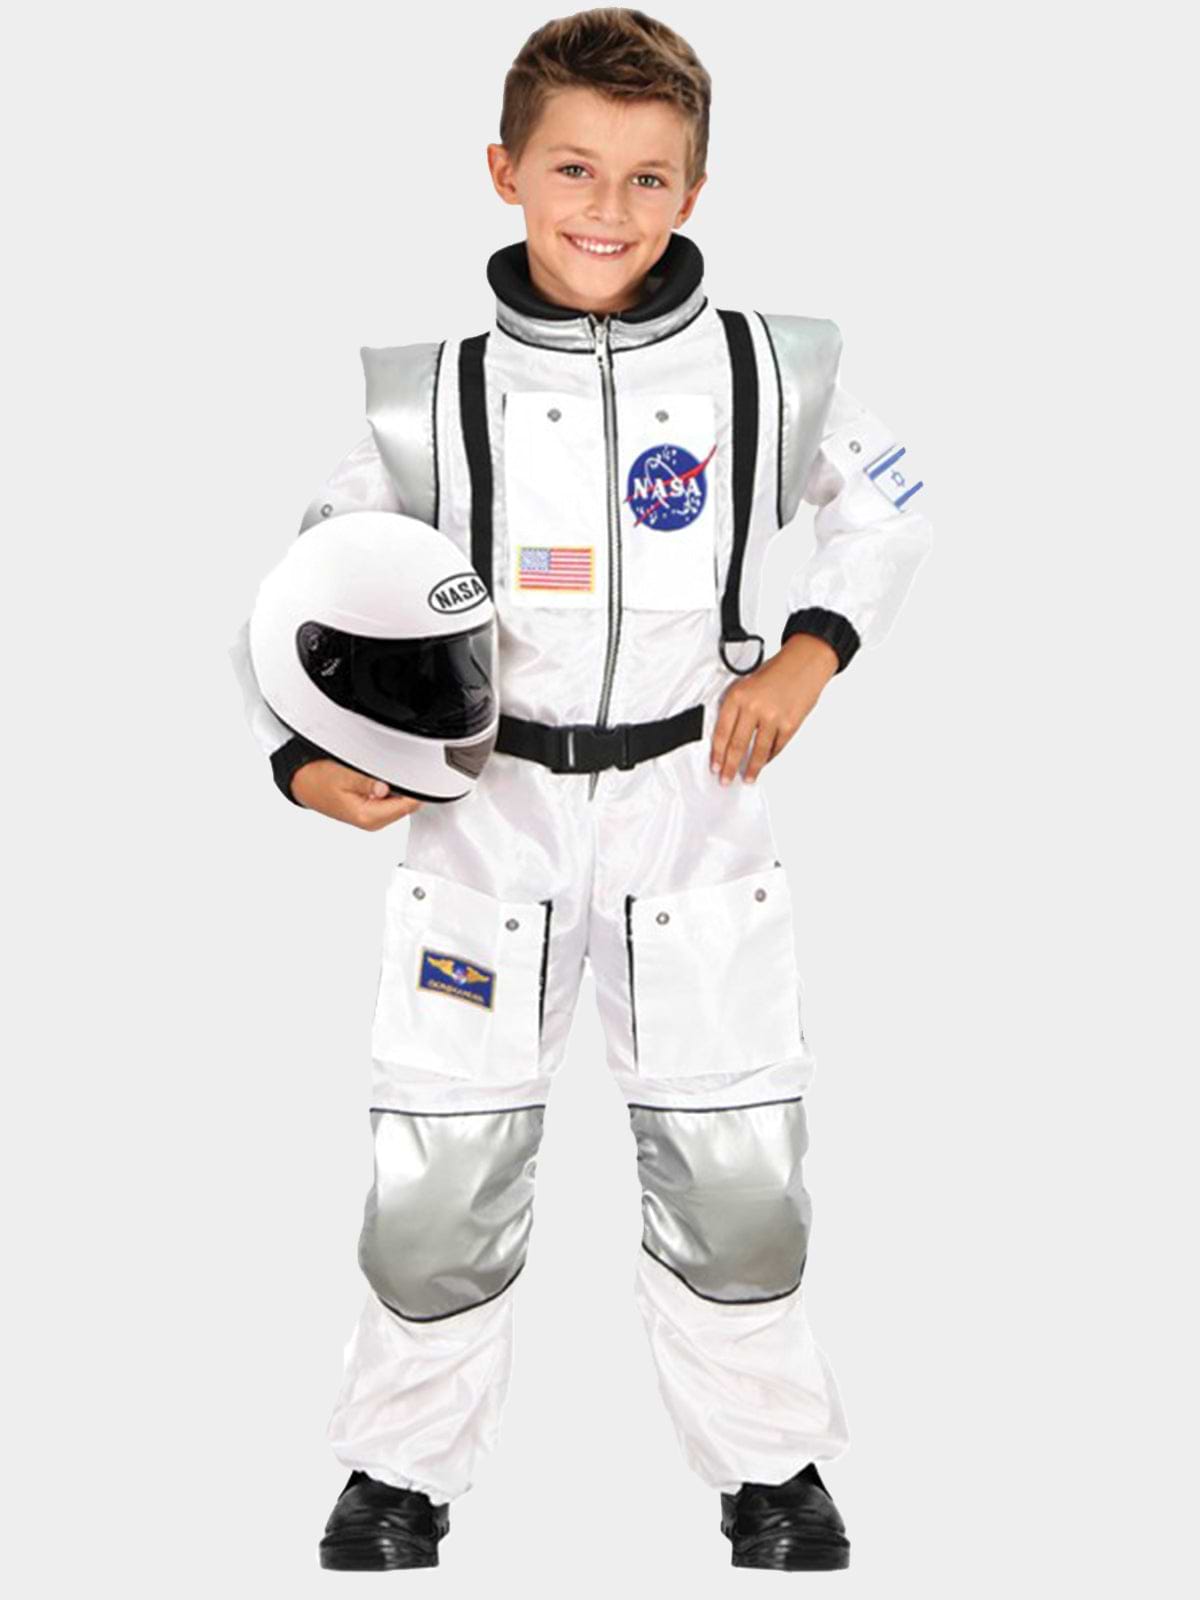 אסטרונאוט לבן מפואר / ילדים